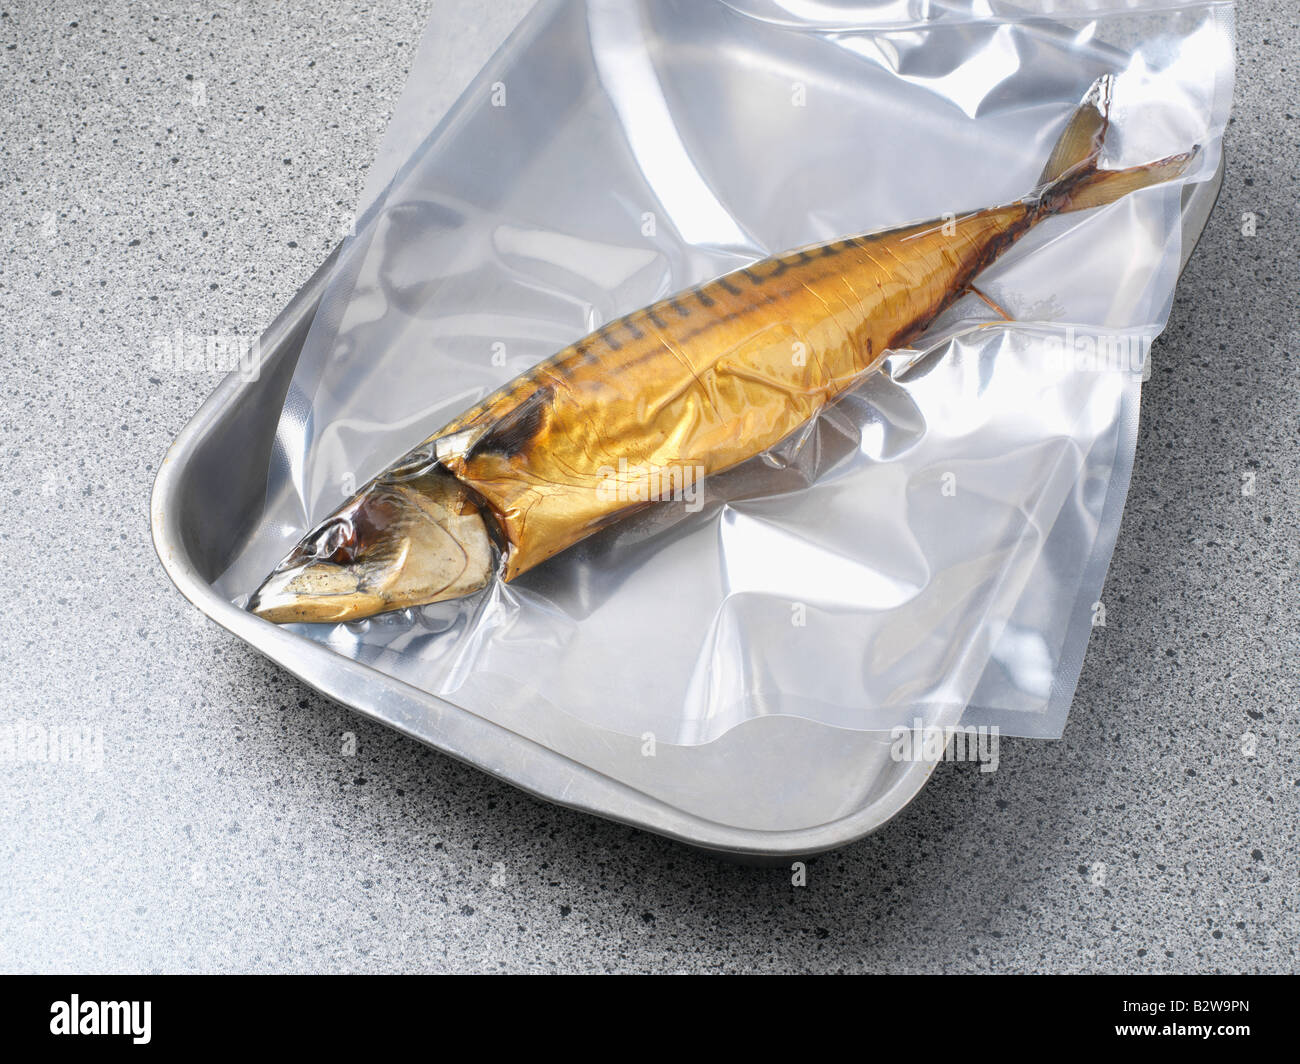 Cómo cocinar pescado envasado al vacío?